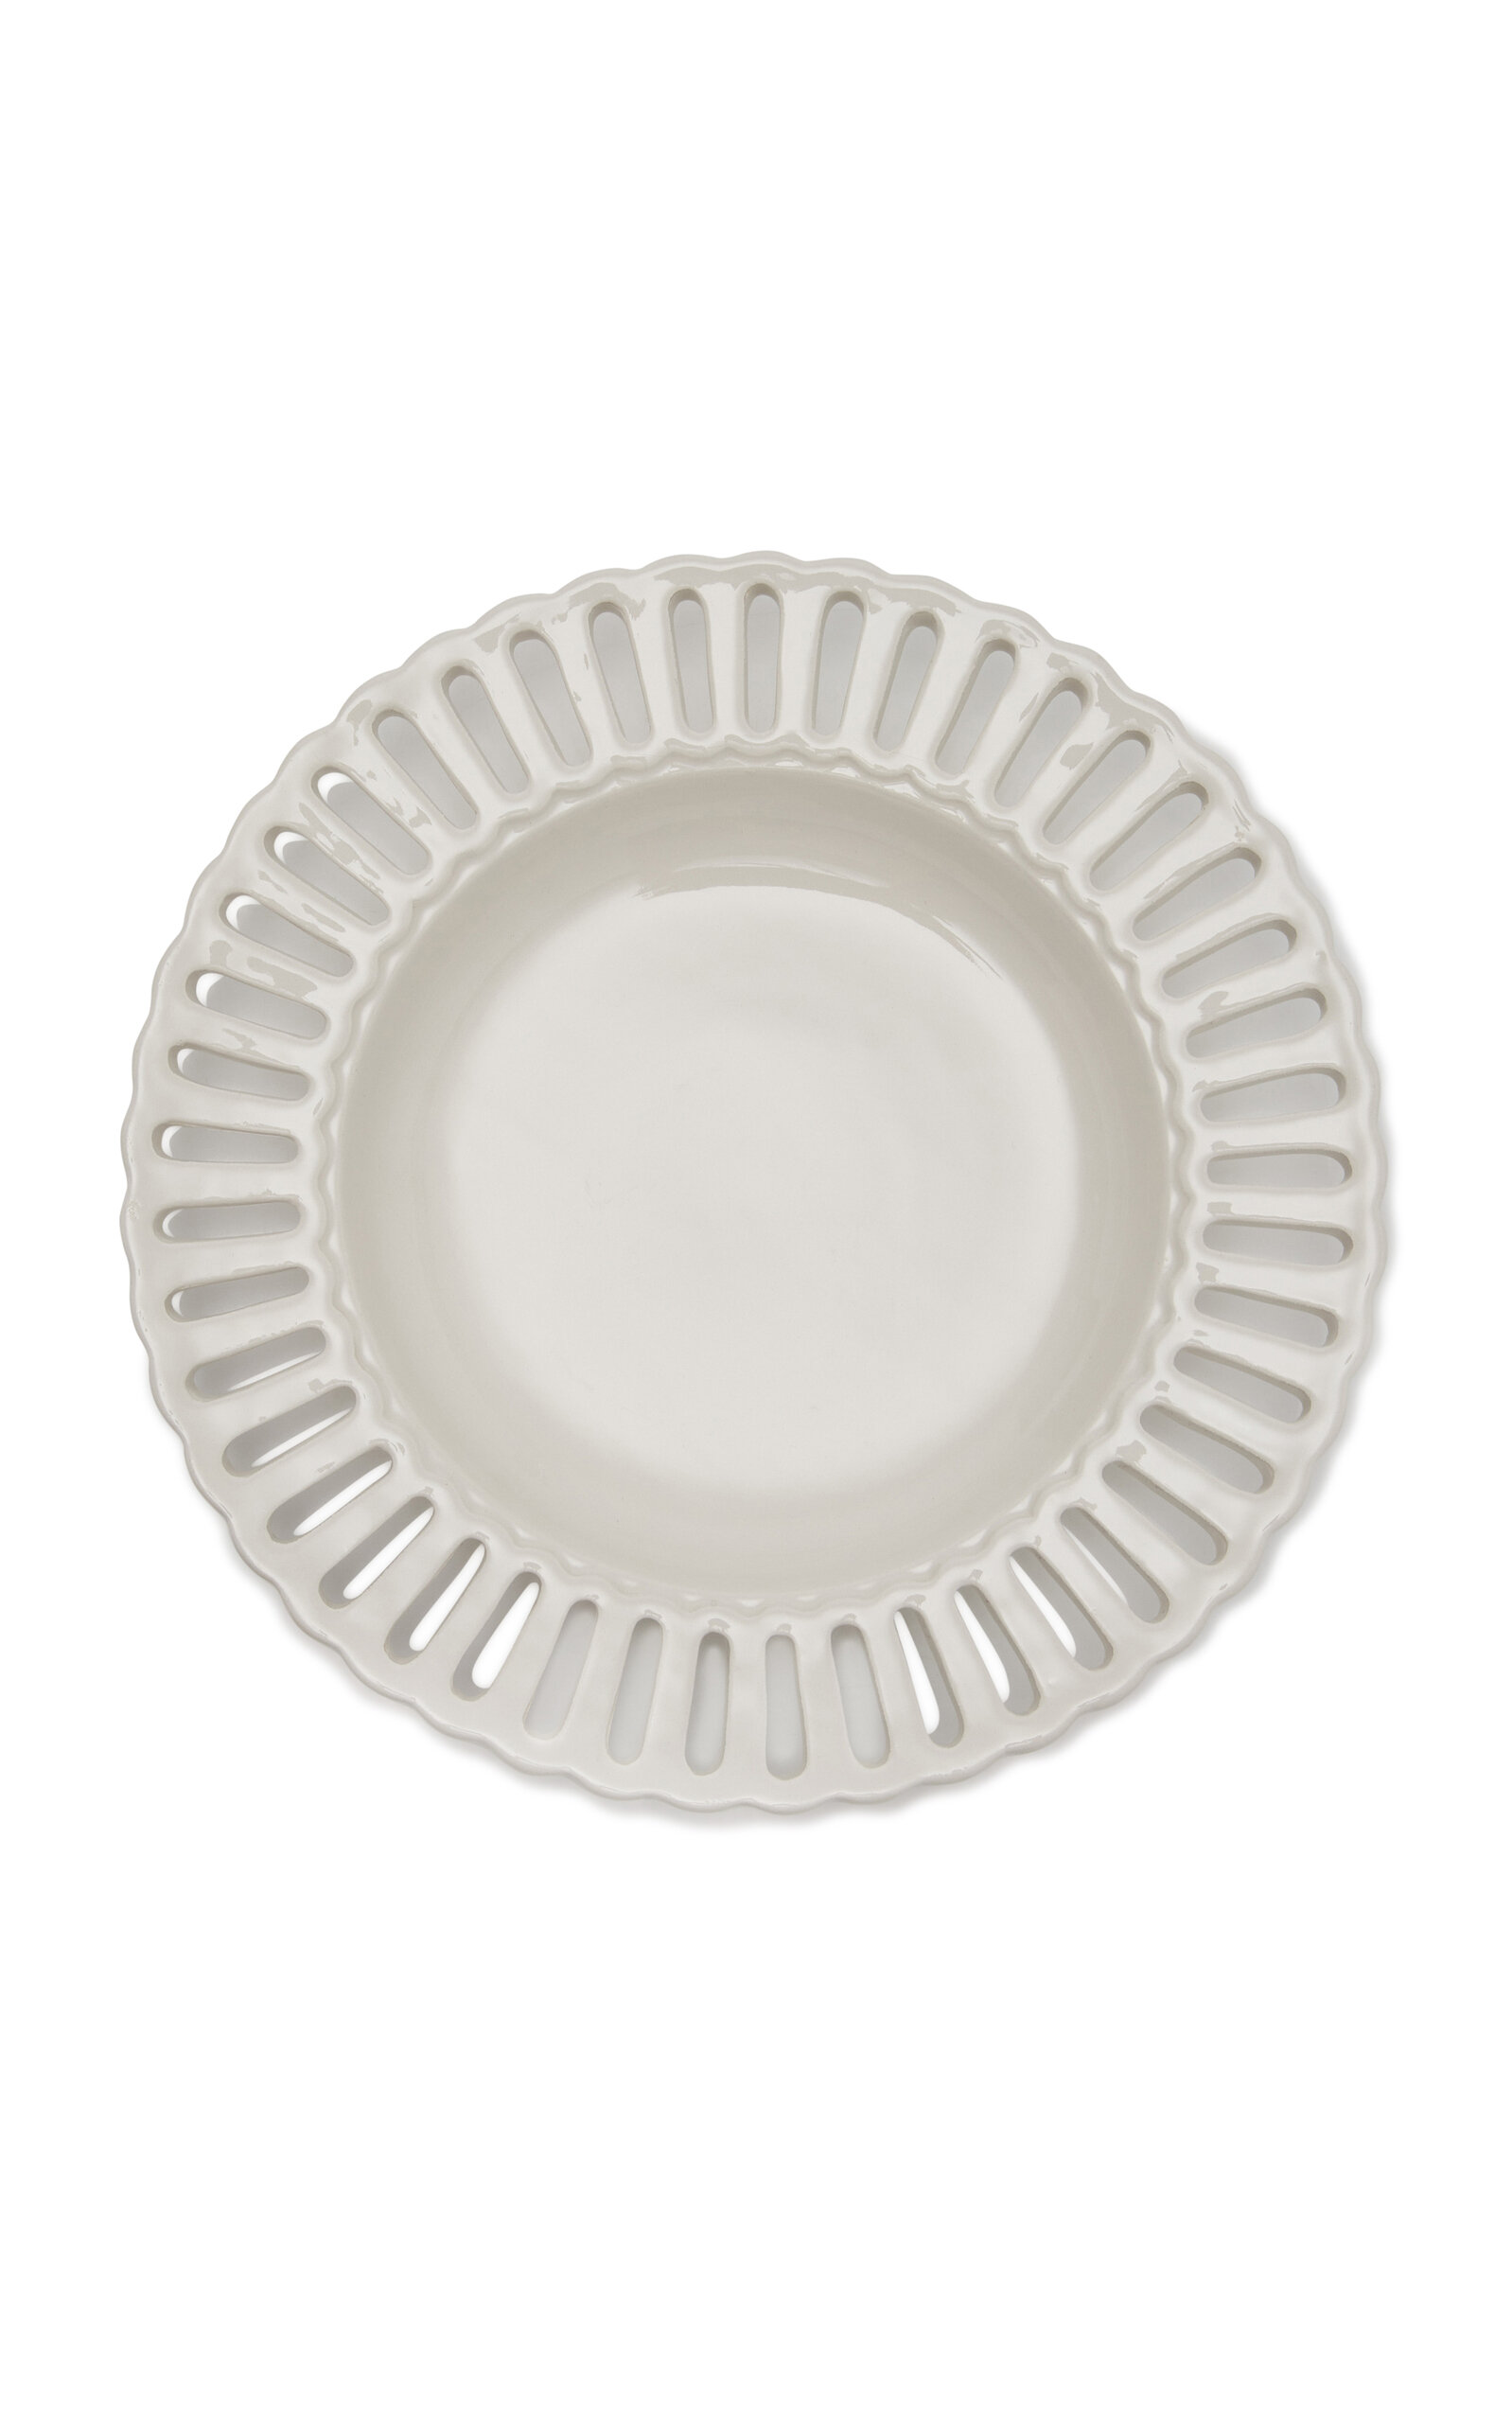 Moda Domus Balconata Creamware Soup Plate In White